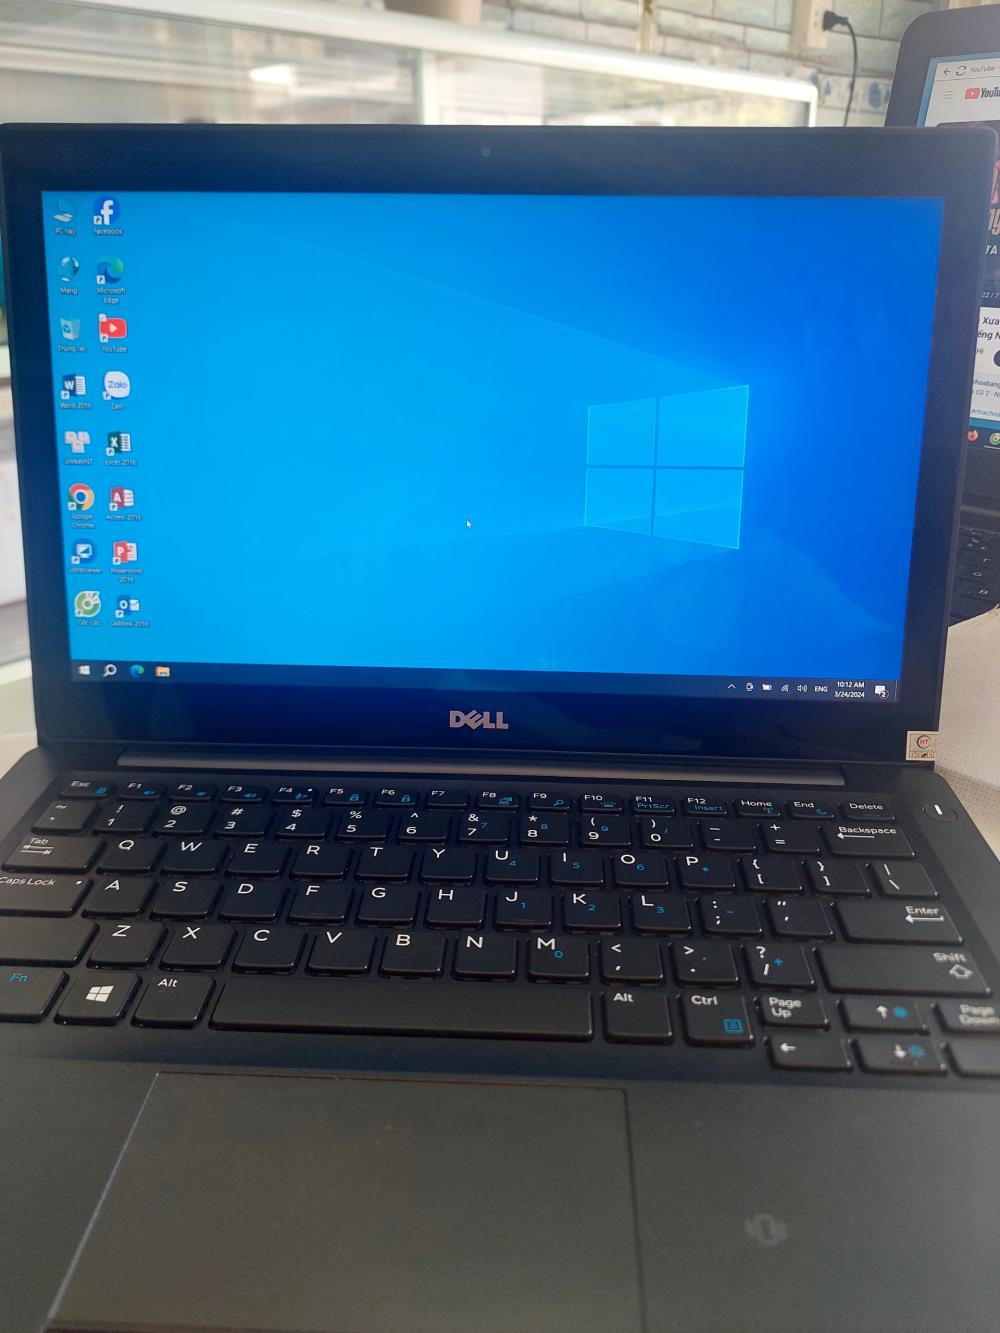 SUPER SALE: Laptop Dell Chính Hãng - Giá Cực Sốc Chỉ Từ 4 Triệu!1452683